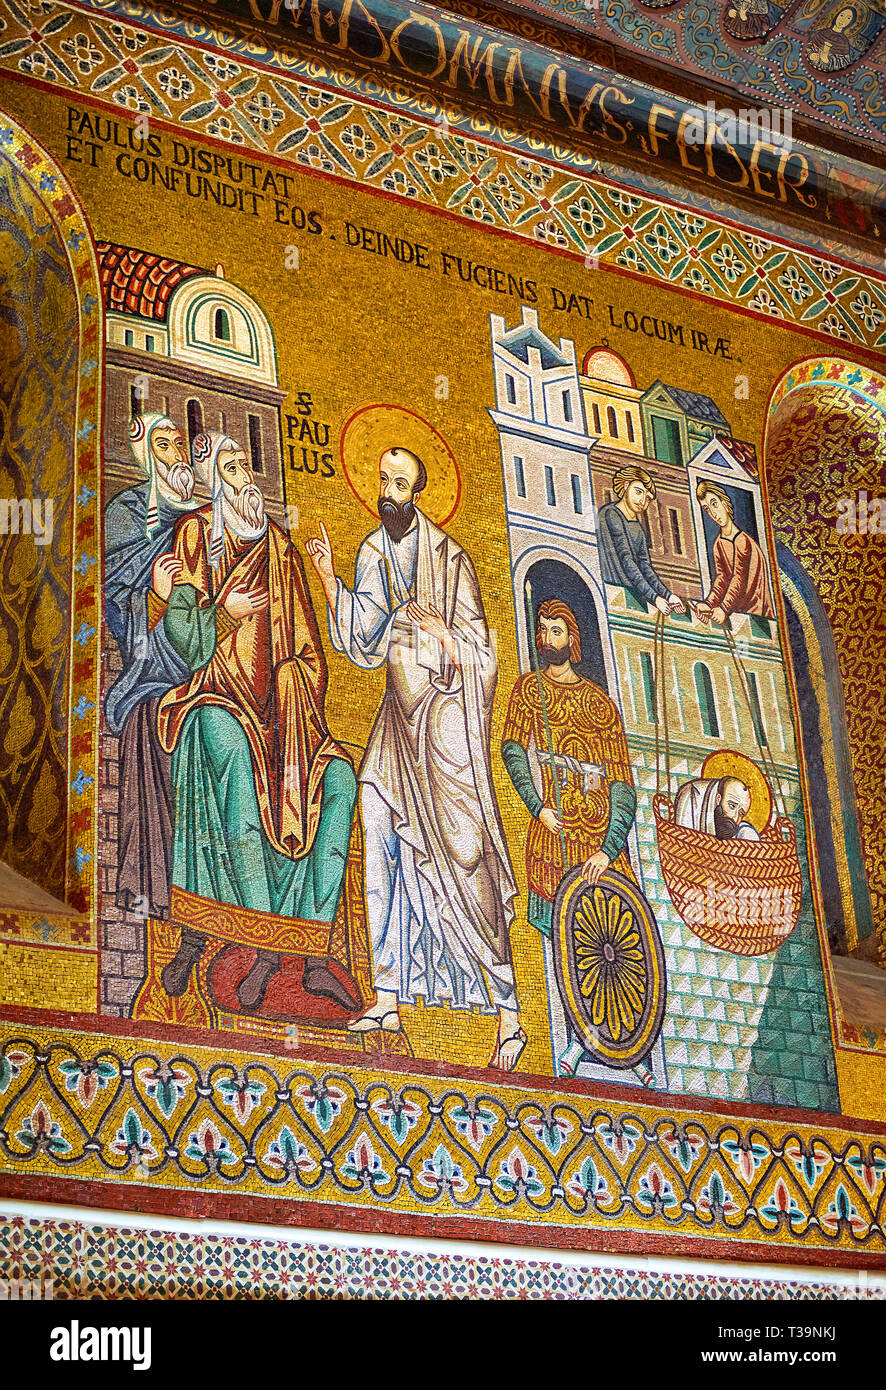 Mittelalterliche byzantinische Mosaiken des Heiligen Paulus Predigt in dann auf der Flucht vor Damaskus, Pfalzkapelle, Cappella Palatina, Palermo, Italien Stockfoto